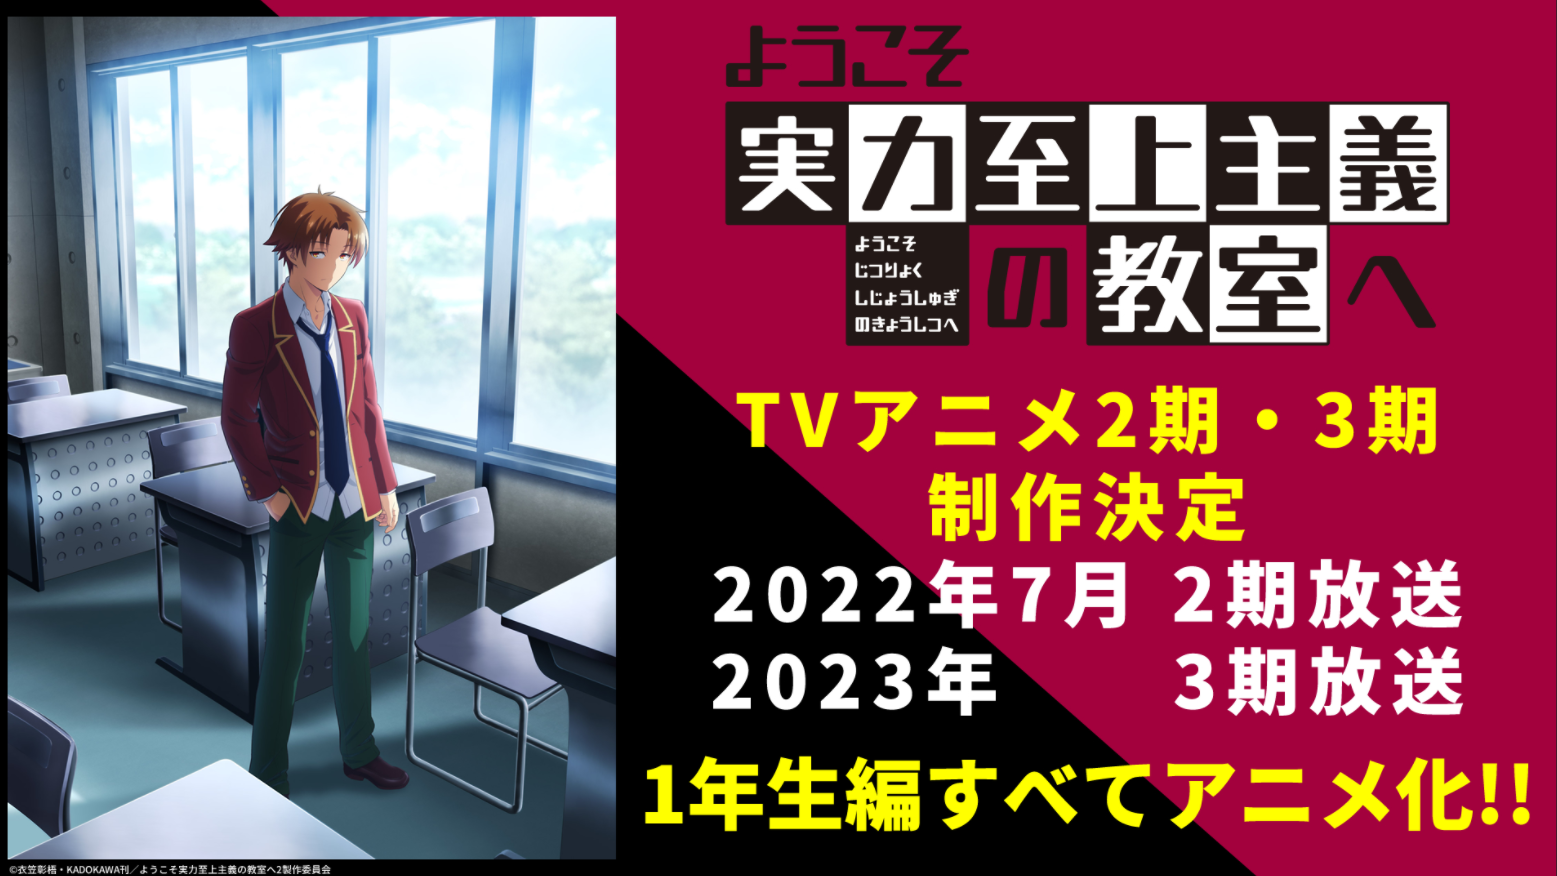 Trailer cùng poster chính thức cho Youkoso Jitsuryoku ss2 đã được phát hành